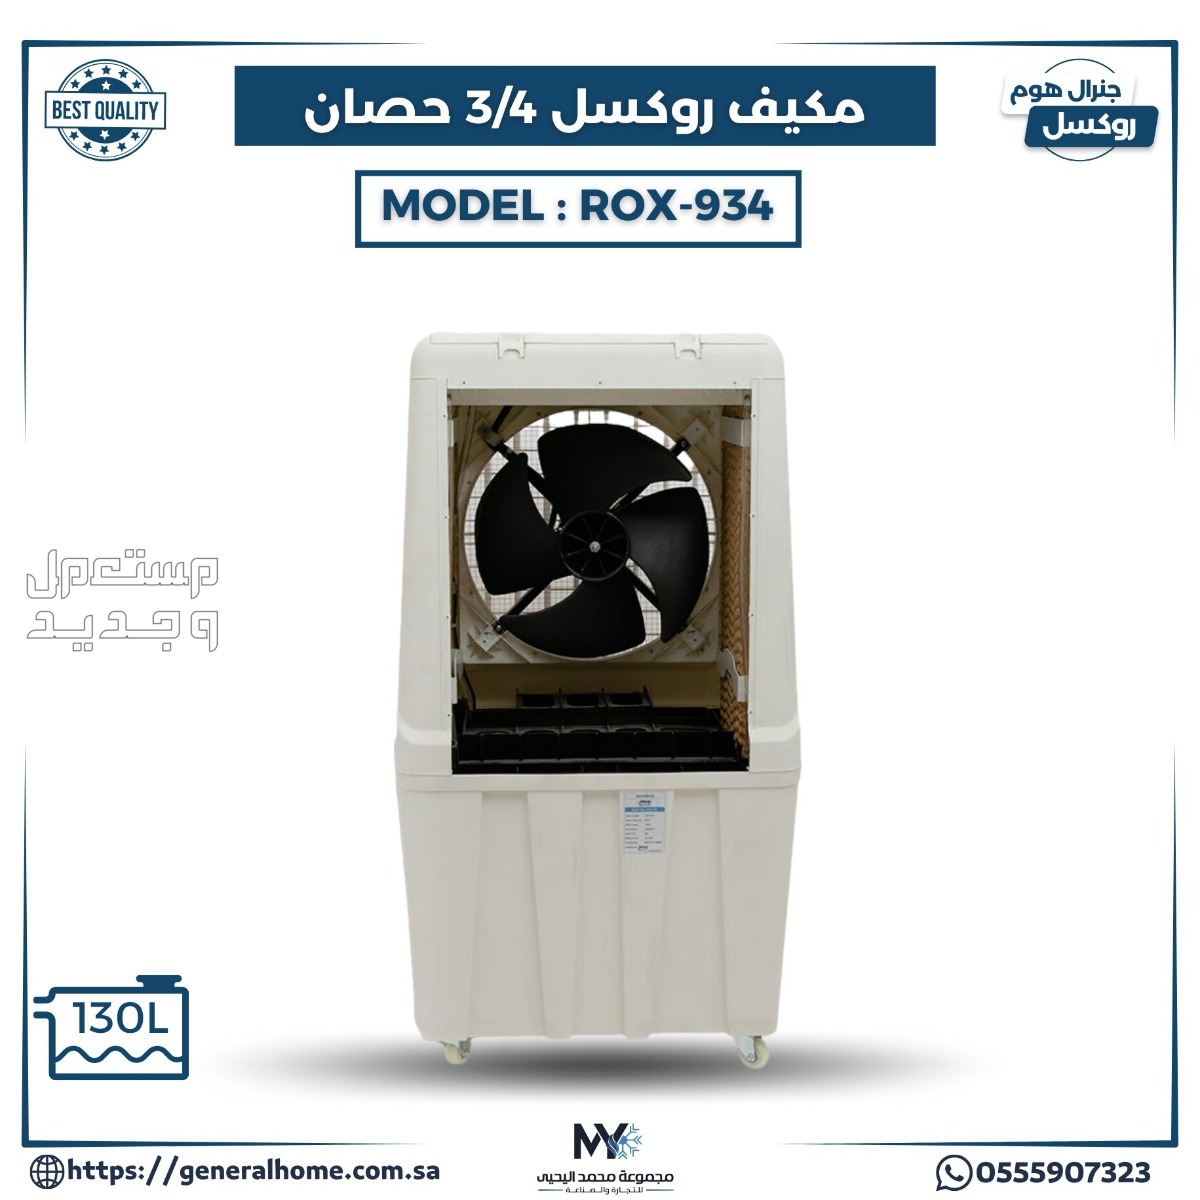 عروض اليحيى للمكيفات بالأنواع والمواصفات والصور والأسعار في مصر مكيف روكسل 3/4 حصان يدوي موديل ROX - 934